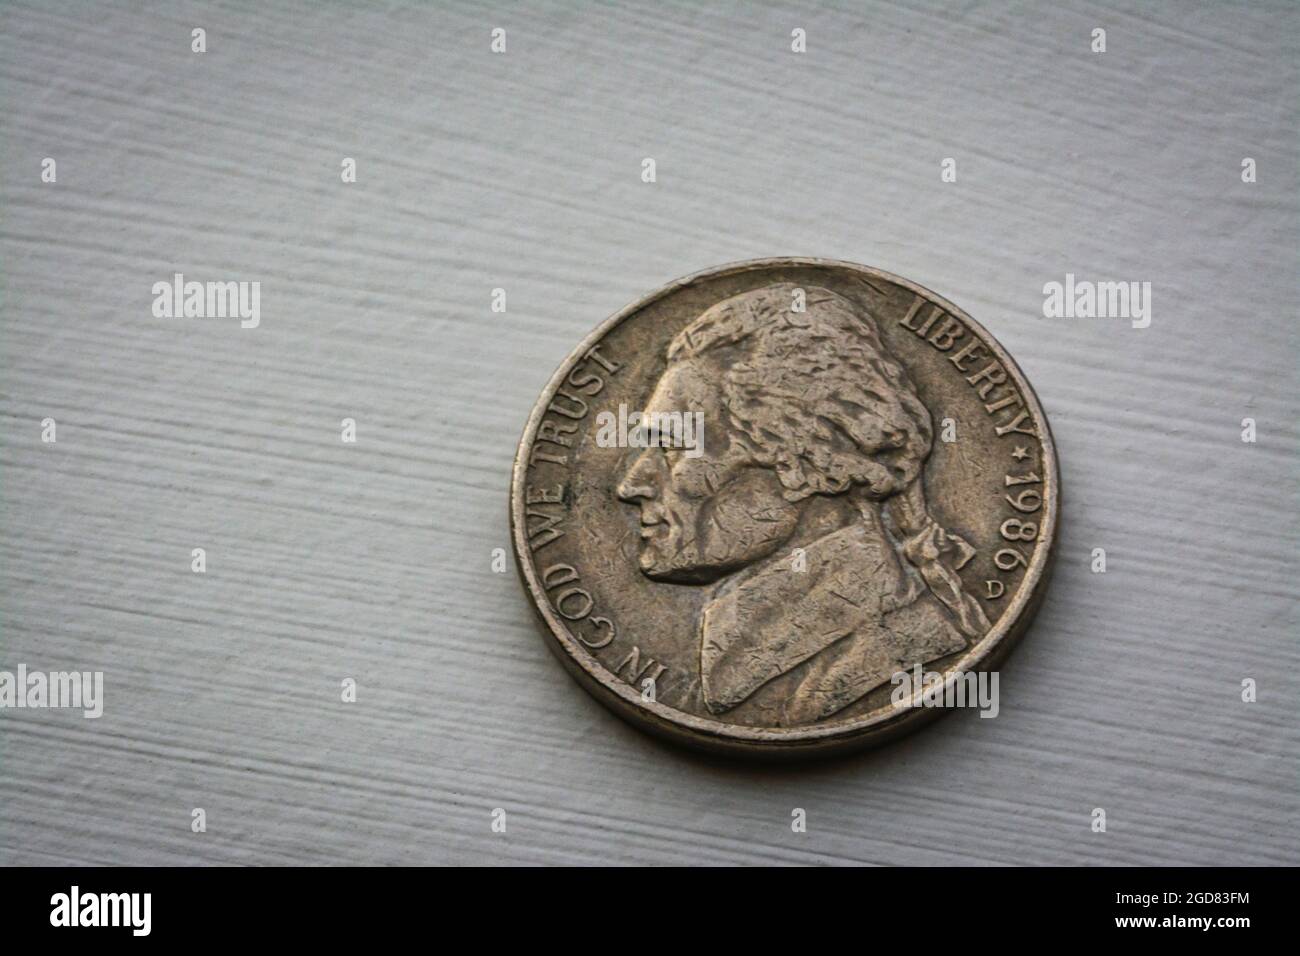 Makrobild der vernarbten und schmutzigen US-Nickelmünze Thomas Jefferson, geprägt in Denver Colorado 1986, Castle Rock Colorado USA. Stockfoto